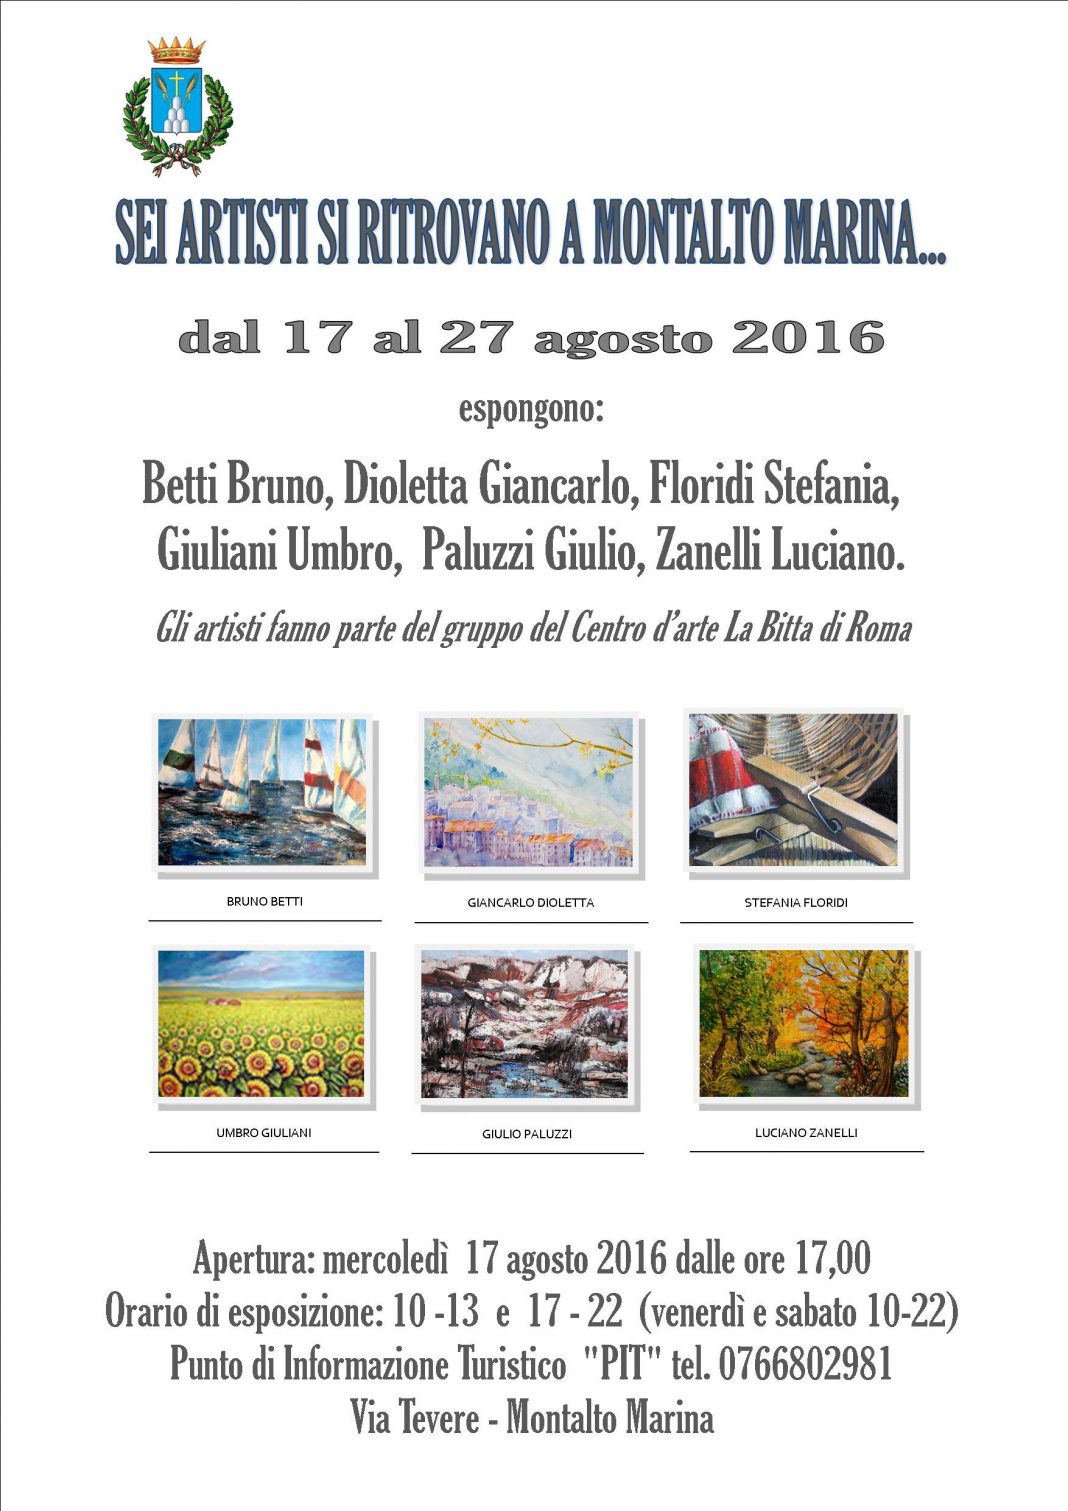 Sei artisti si ritrovano a Montalto Marina..https://www.exibart.com/repository/media/eventi/2016/08/sei-artisti-si-ritrovano-a-montalto-marina-1068x1511.jpg